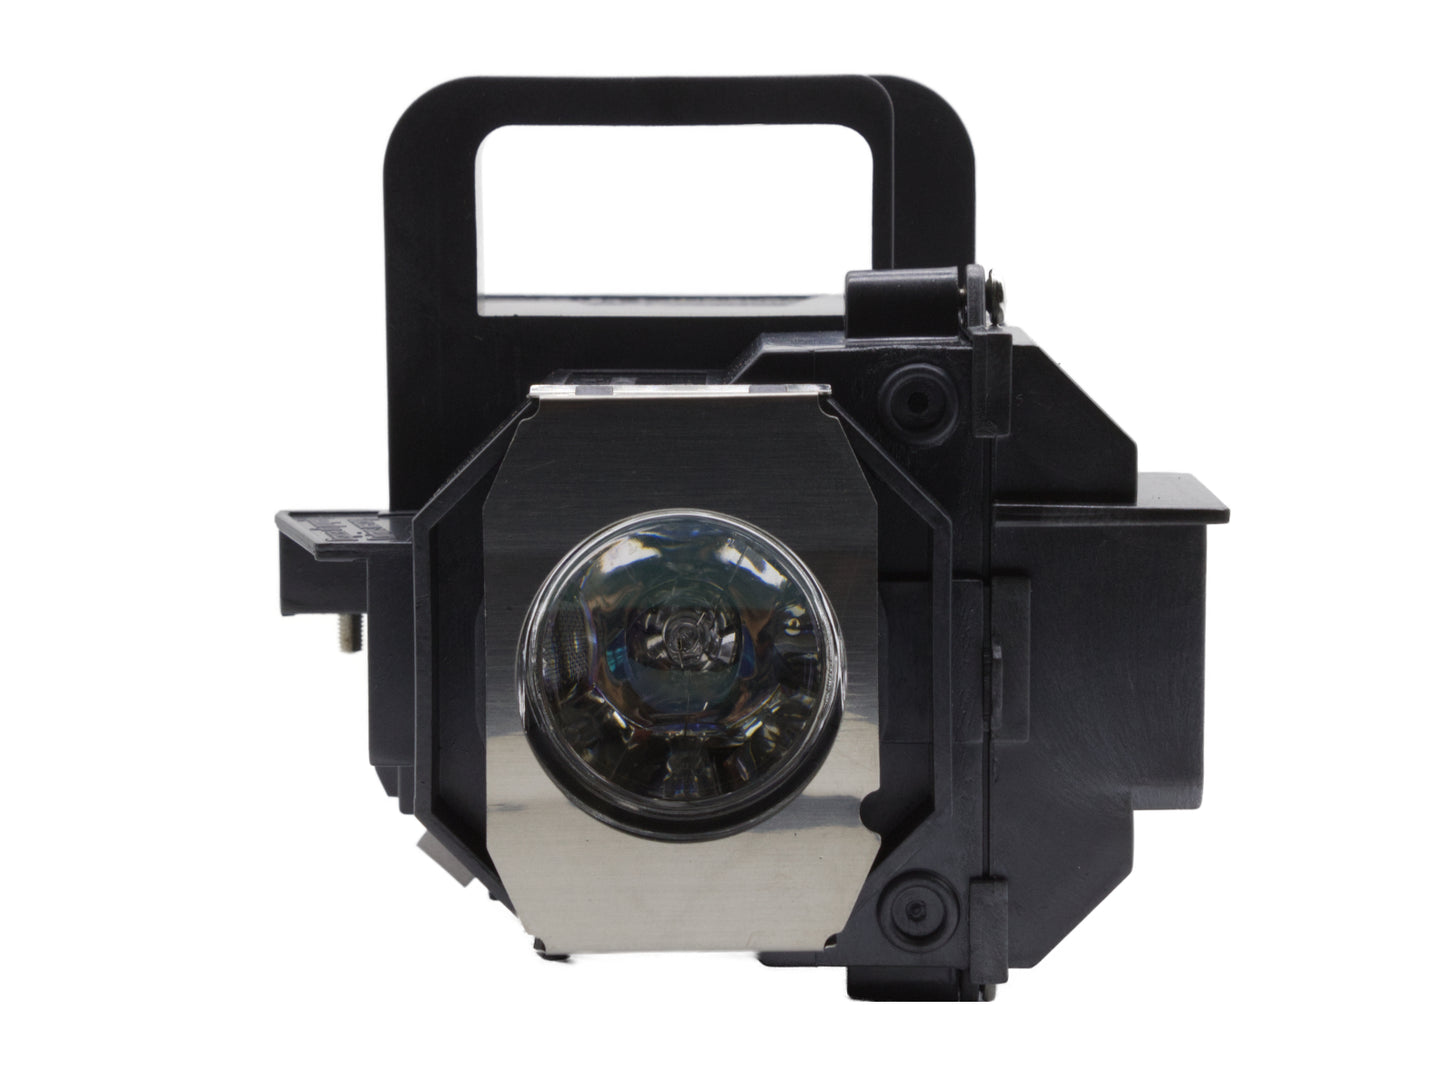 azurano Beamerlampe kompatibel mit EPSON ELPLP49, V13H010L49 für viele Epson Projektoren der EH-Serie, PowerLite-Serie, Home Cinema-Serie, Ensemble, Ersatzlampe mit Gehäuse, 200W - Bild 8